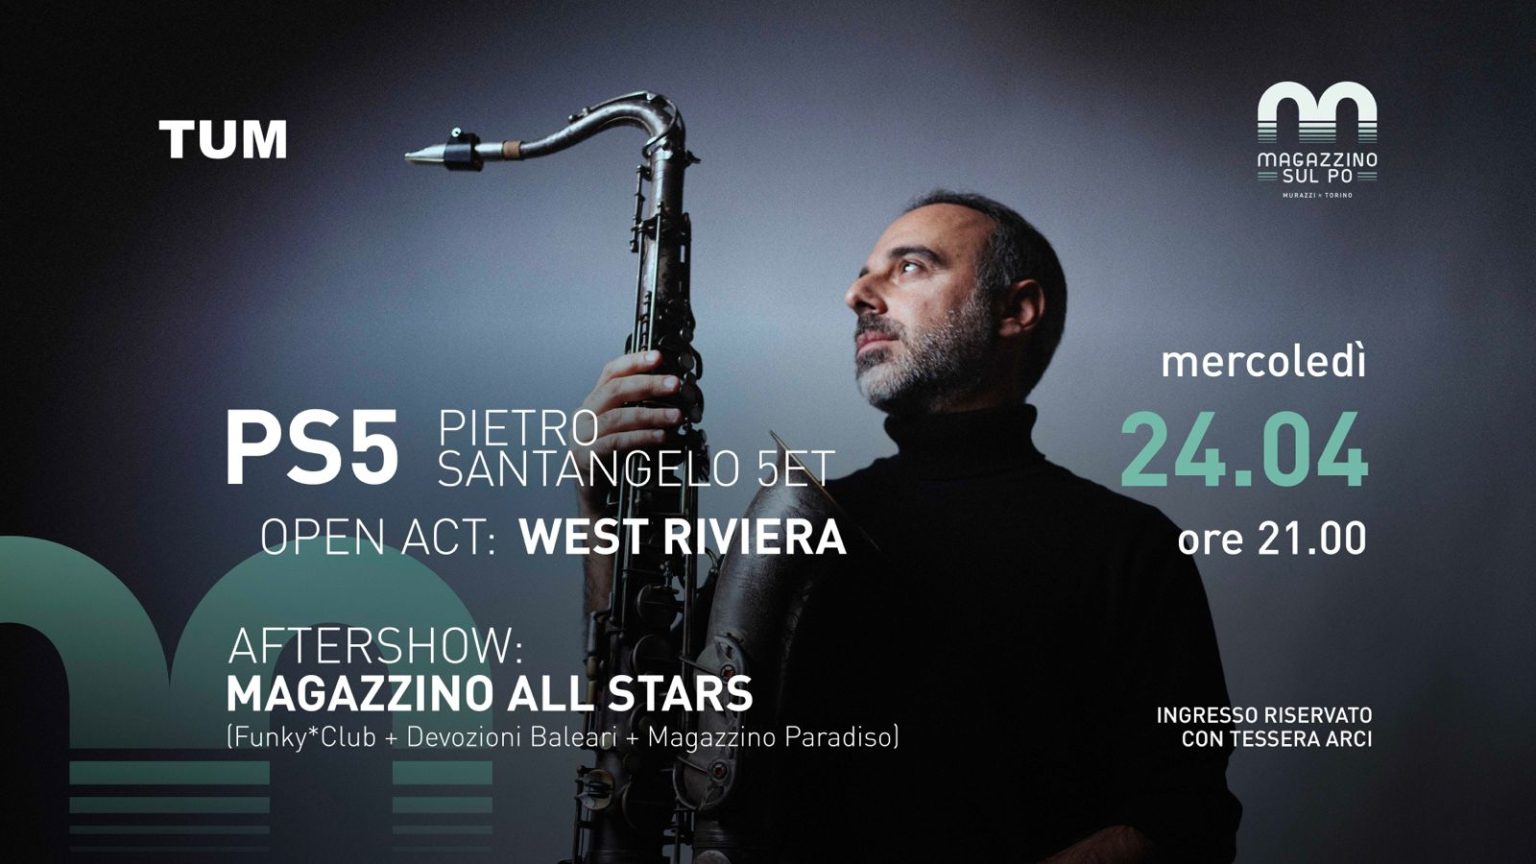 PS5 (Pietro Santangelo 5tet) open act: West Riviera